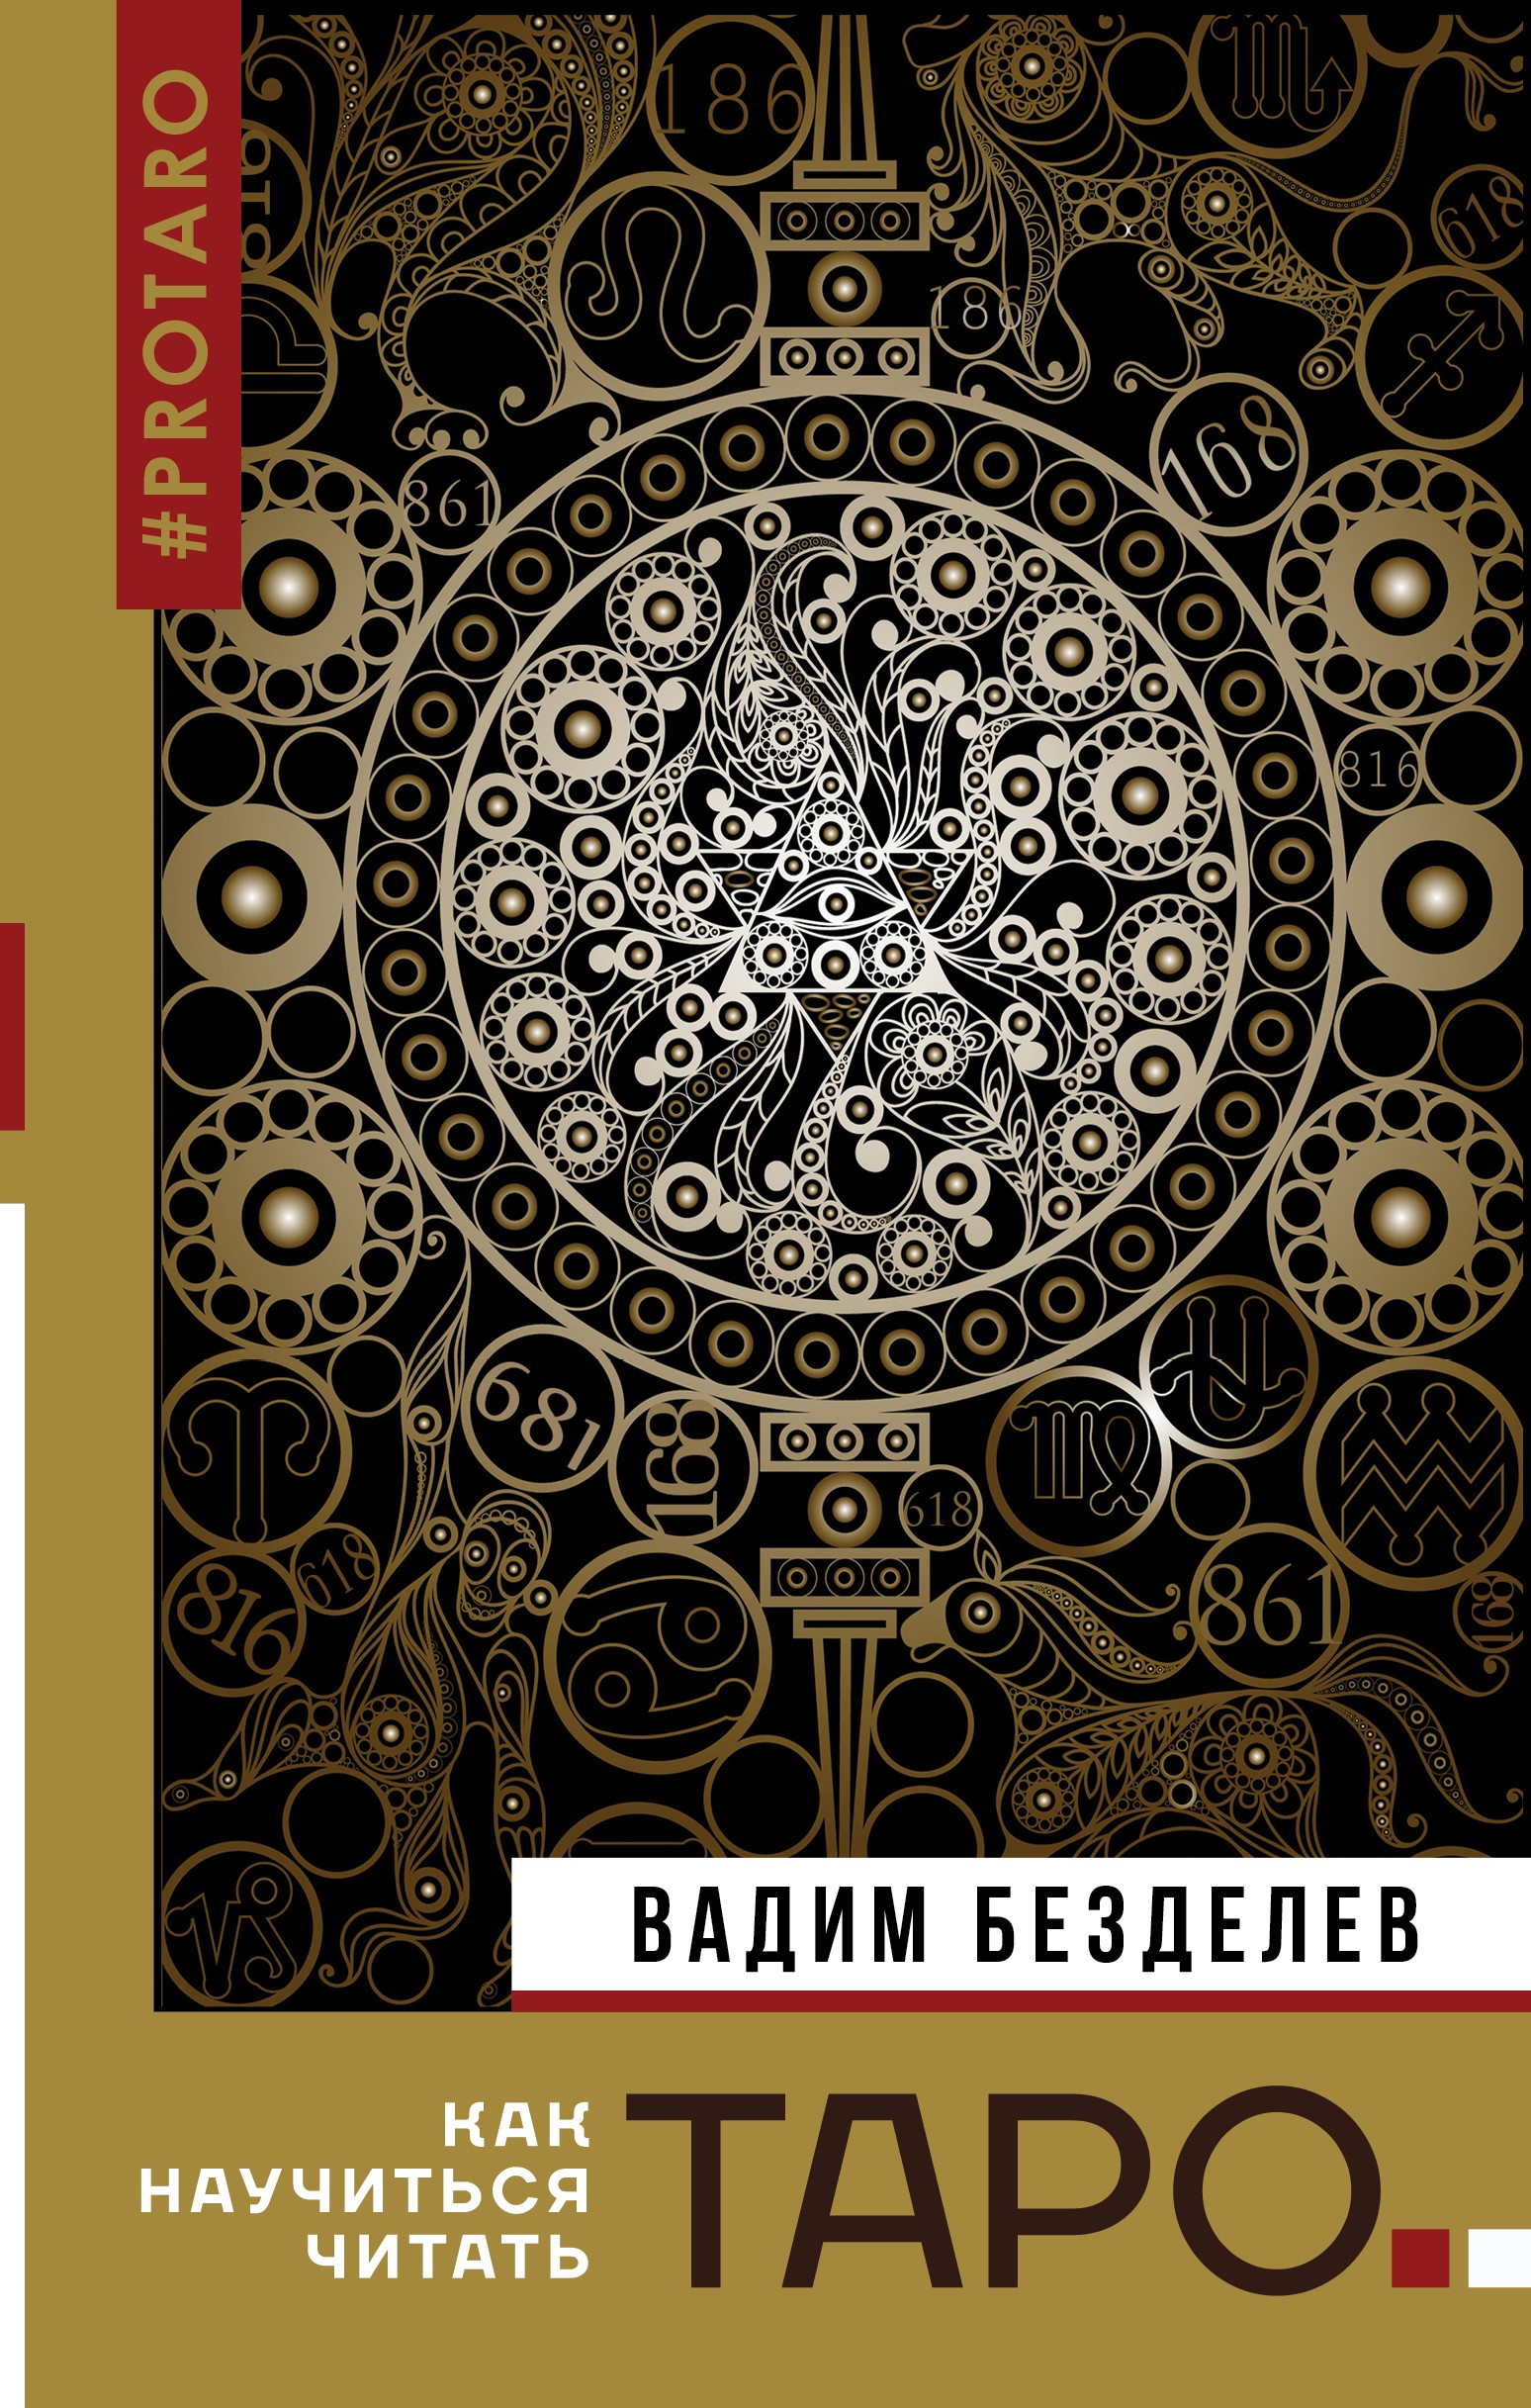 Таро: как научиться читать, Вадим Безделев – скачать книгу fb2, epub, pdf  на ЛитРес